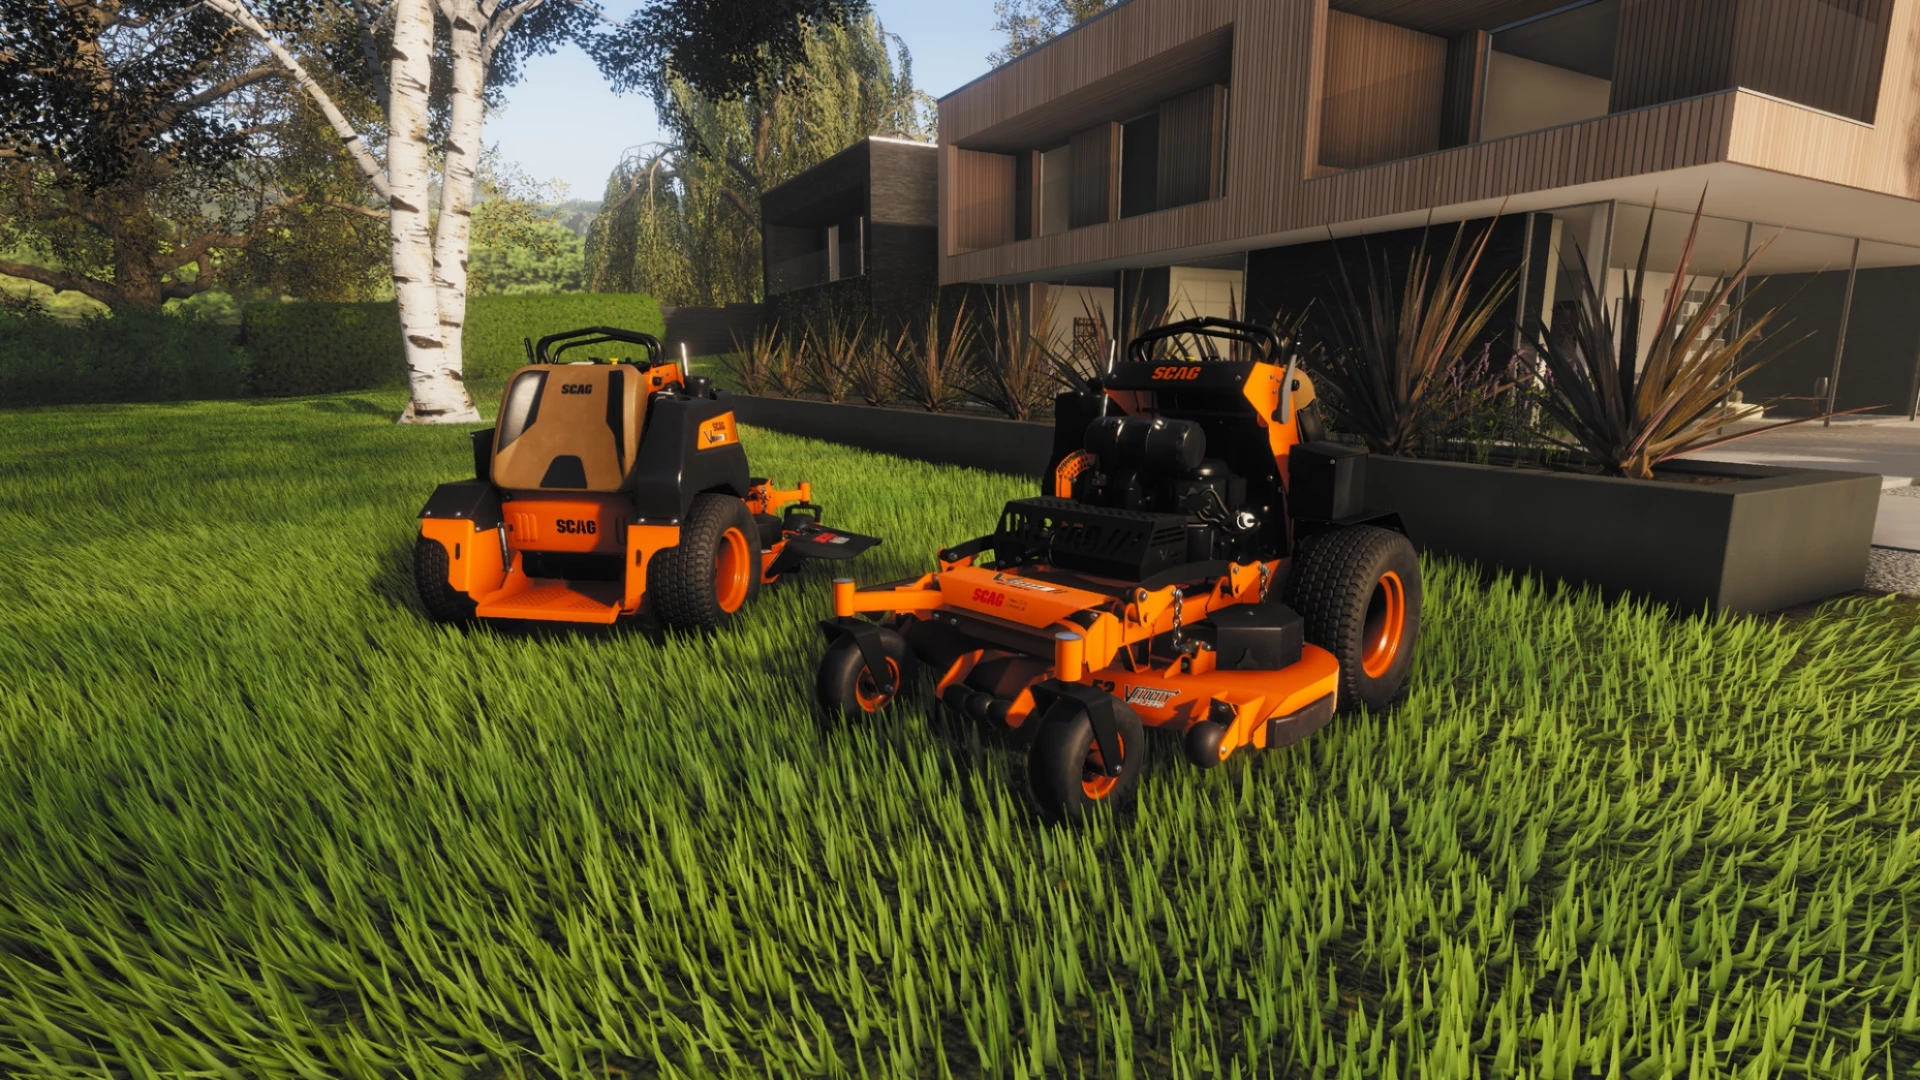 Lawn Mowing Simulator Landmark Edition voor de PlayStation 5 kopen op nedgame.nl